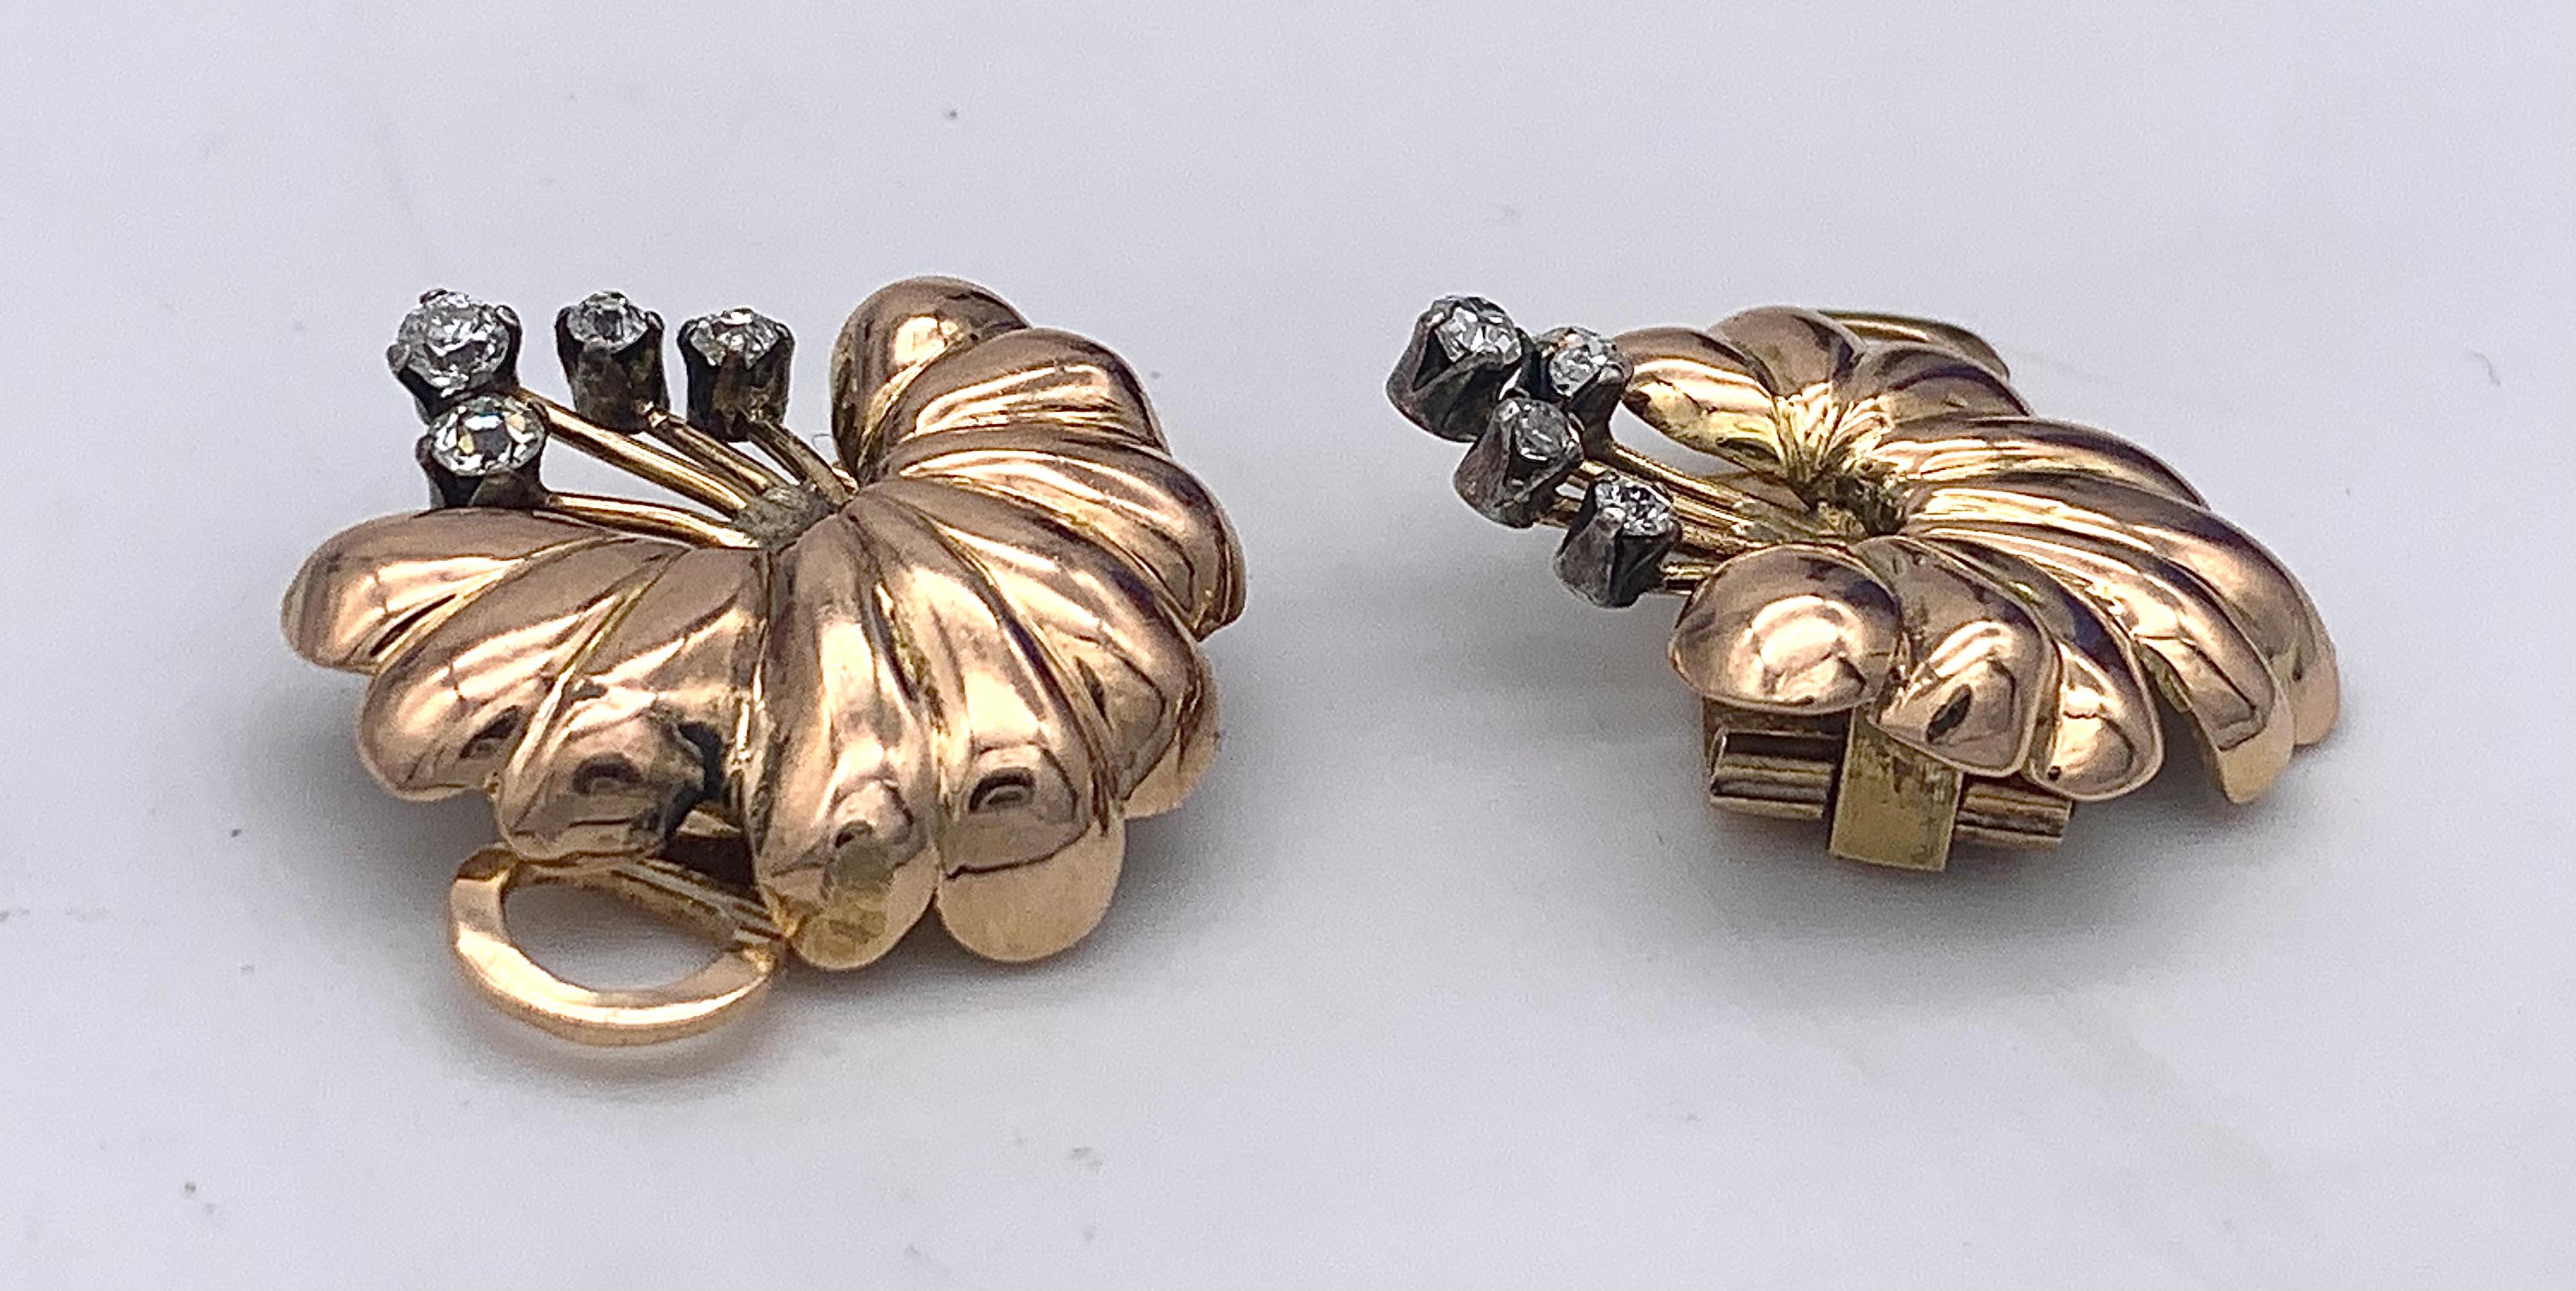 Diese fein modellierten Art-Déco-Ohrclips mit ihren ausdrucksstarken Blütenstempeln wurden um 1935 gefertigt. Die Blütenstempel sind mit runden, in Silber gefassten Diamanten verziert.
Die Ohrclips sind auf der Außenseite der Clipmechanismen